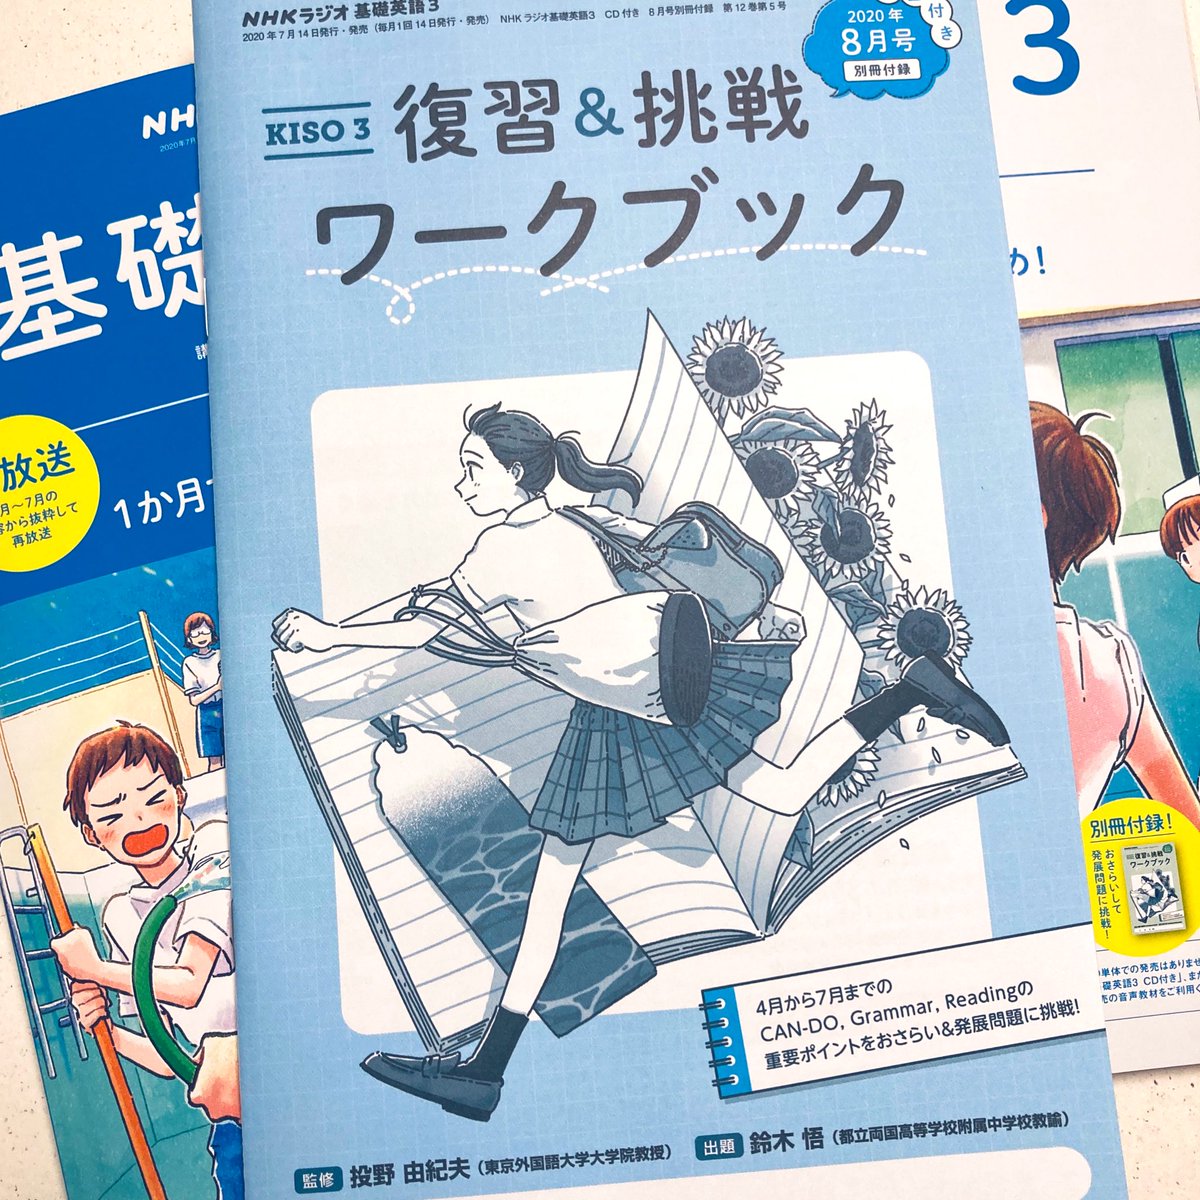 《お仕事》
NHKテキスト 基礎英語3
8月号も発売されております。
今月号は4〜7月までのおさらいと、復習&挑戦ワークブックの付録がセットです?

今月もどうぞよろしくお願いします◎

https://t.co/3ePlwW8YeH 